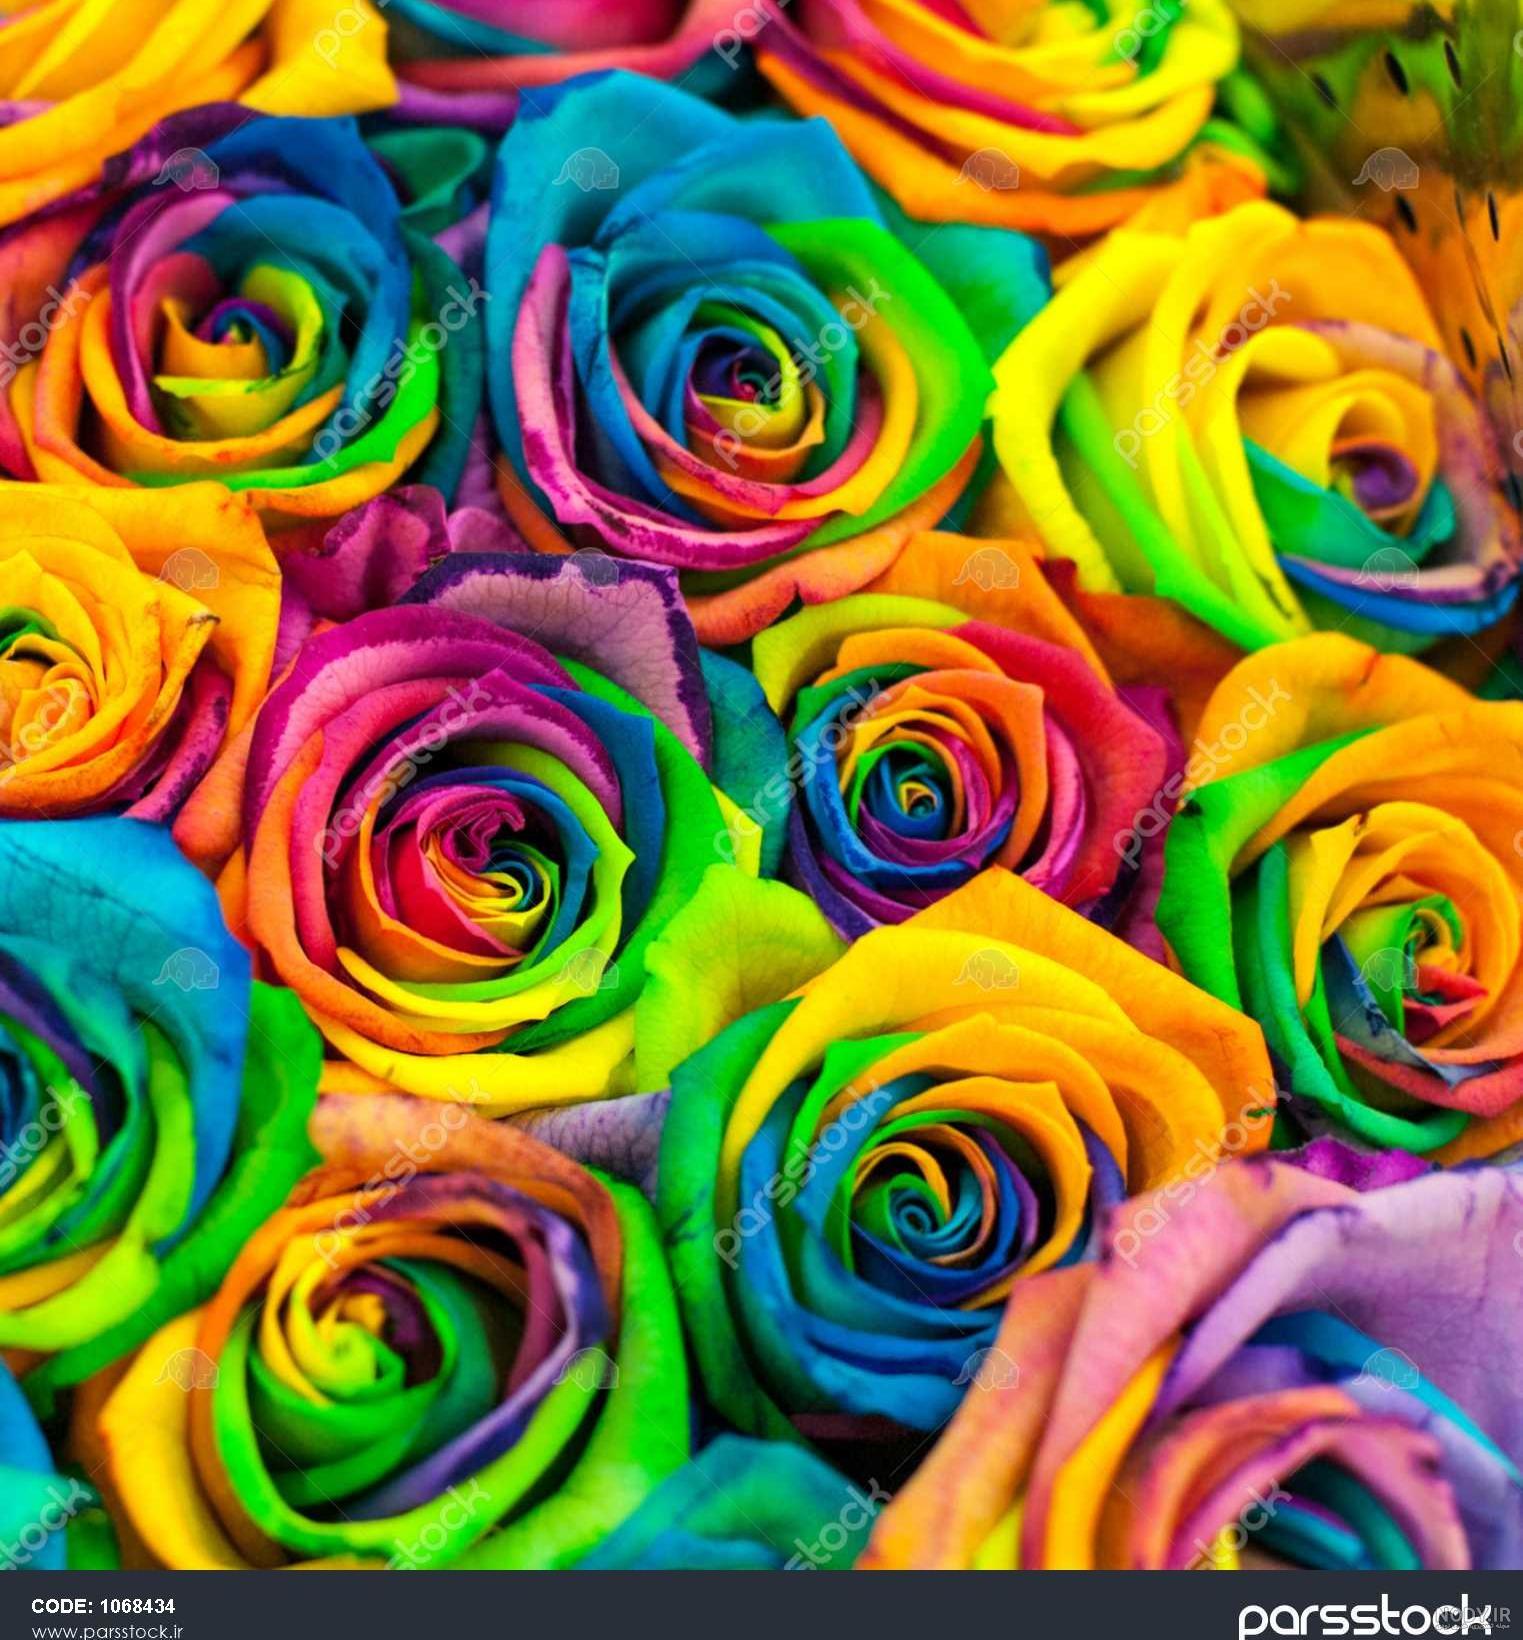 عکس هایی از گل رز های رنگی